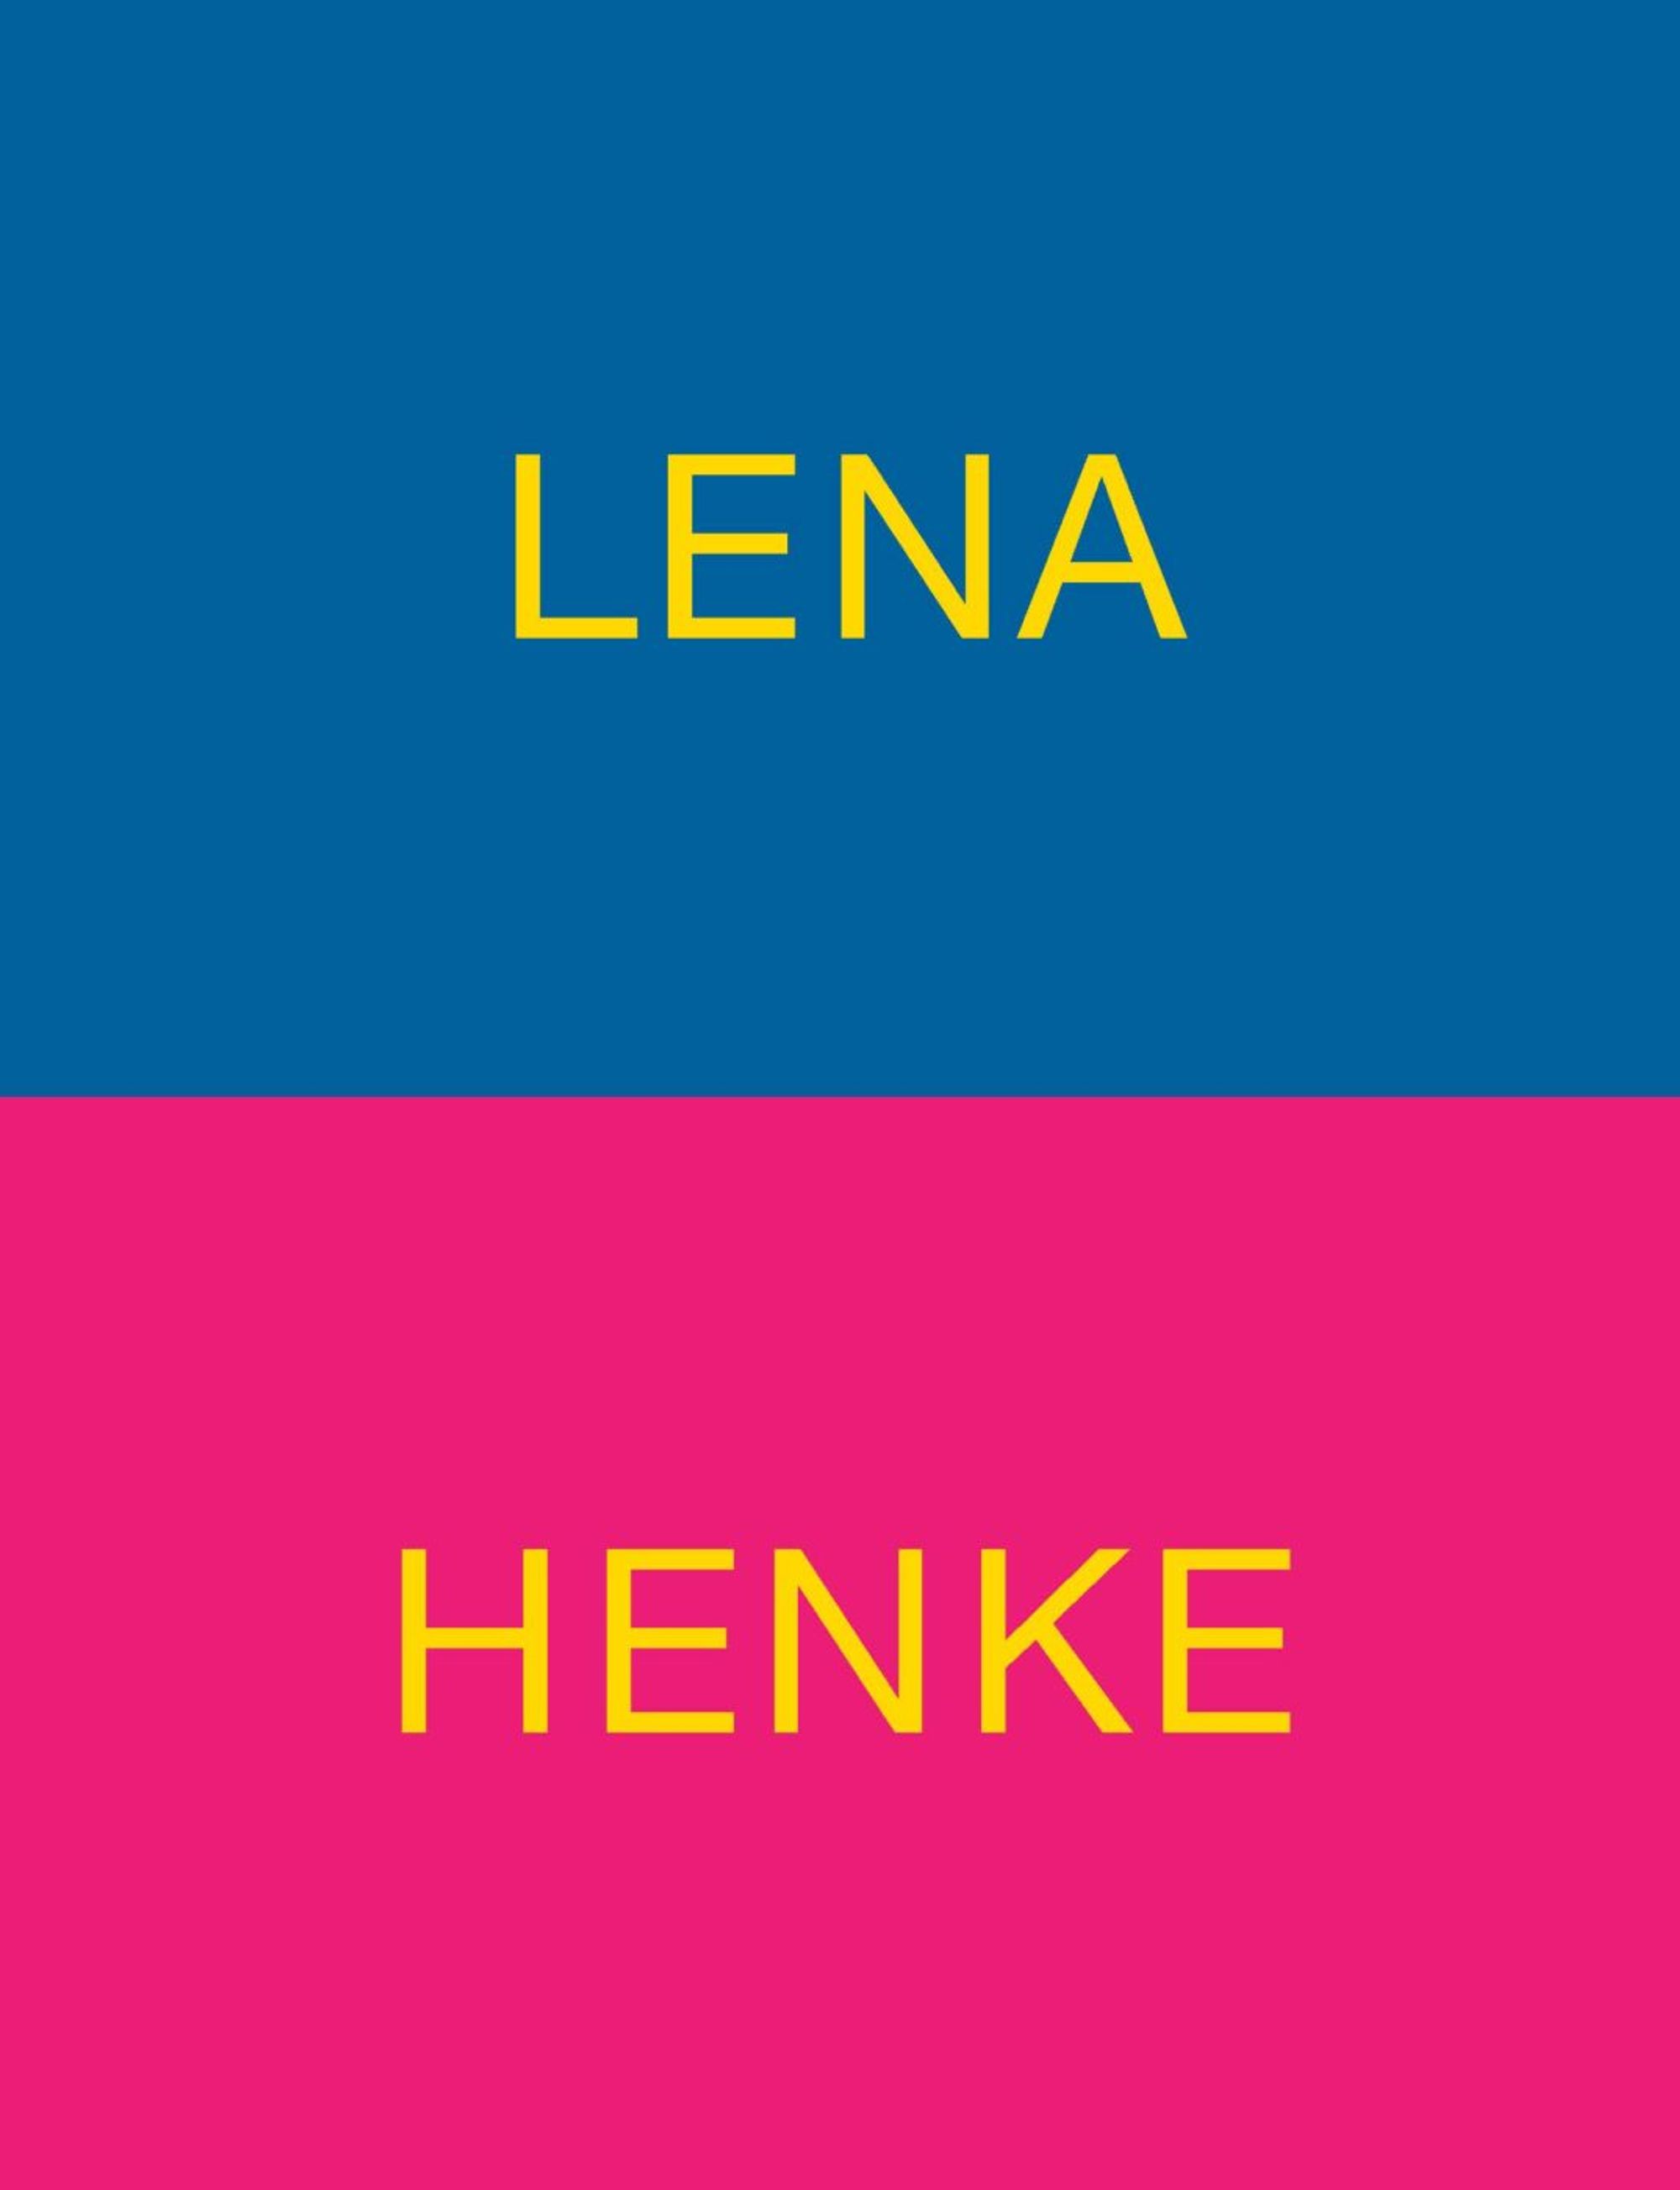 Detail view of Lena Henke: Schrei mich nicht an, Krieger! against a plain gray background